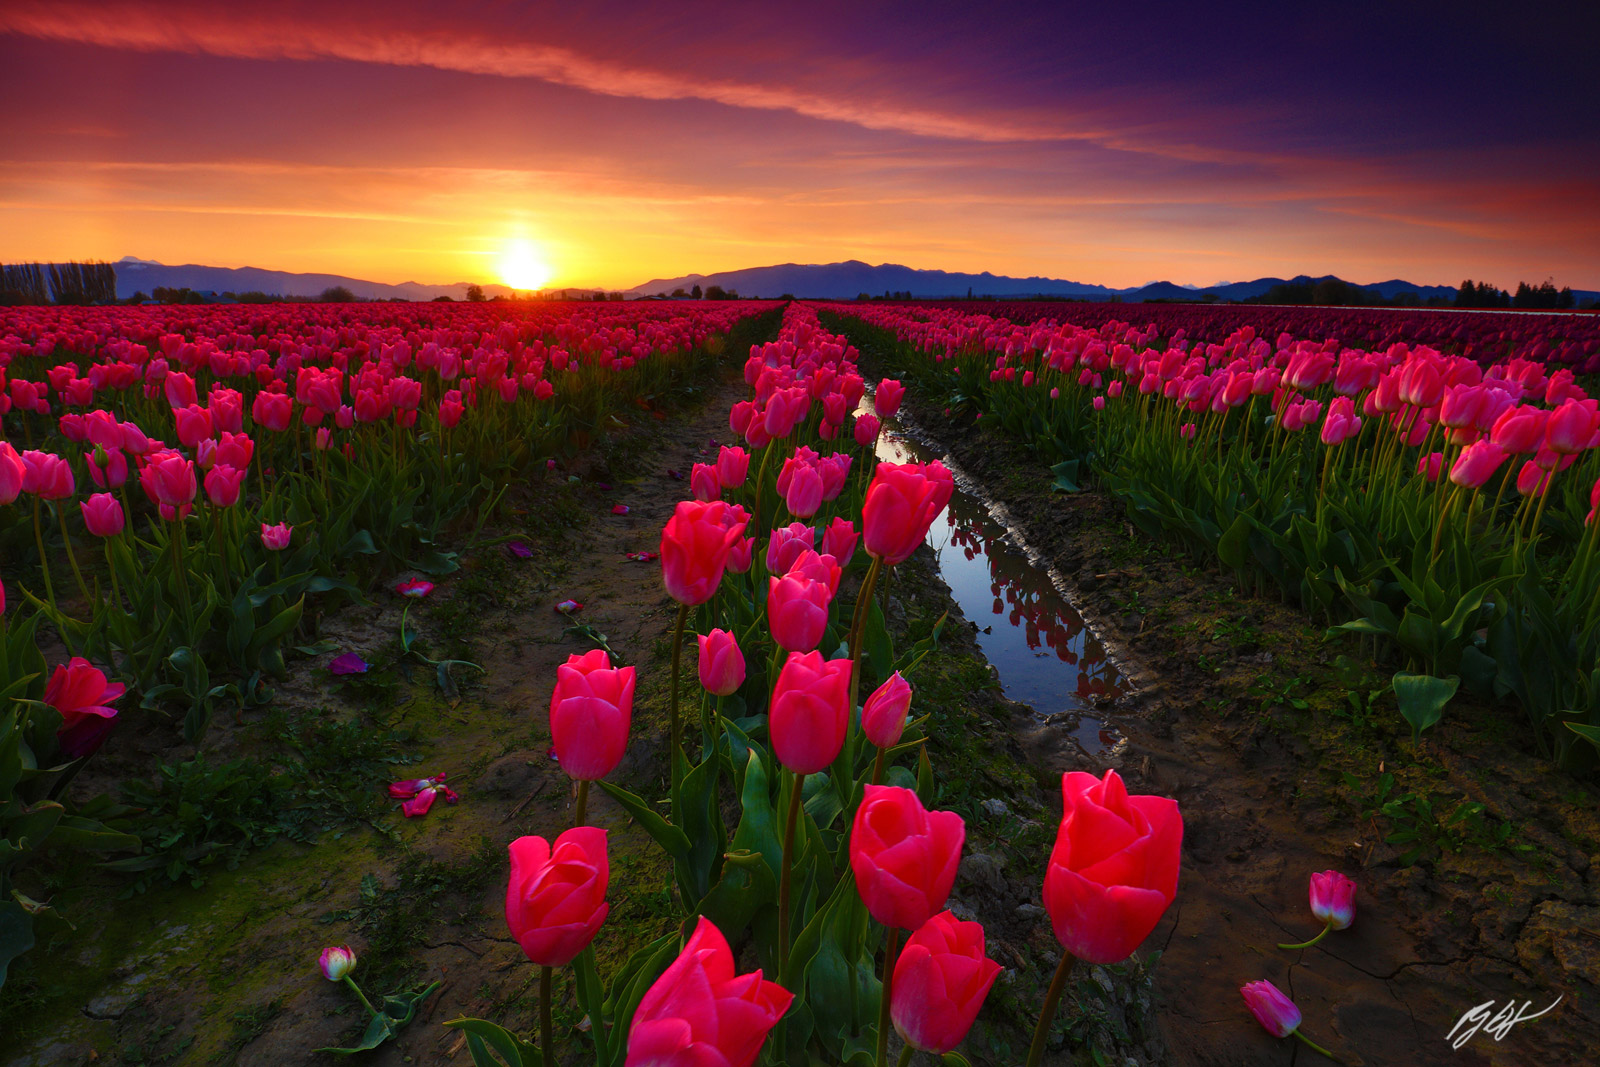 Sunrise over Tulip Fields in Roozengaarde Fields in Skagit Valley in Washington